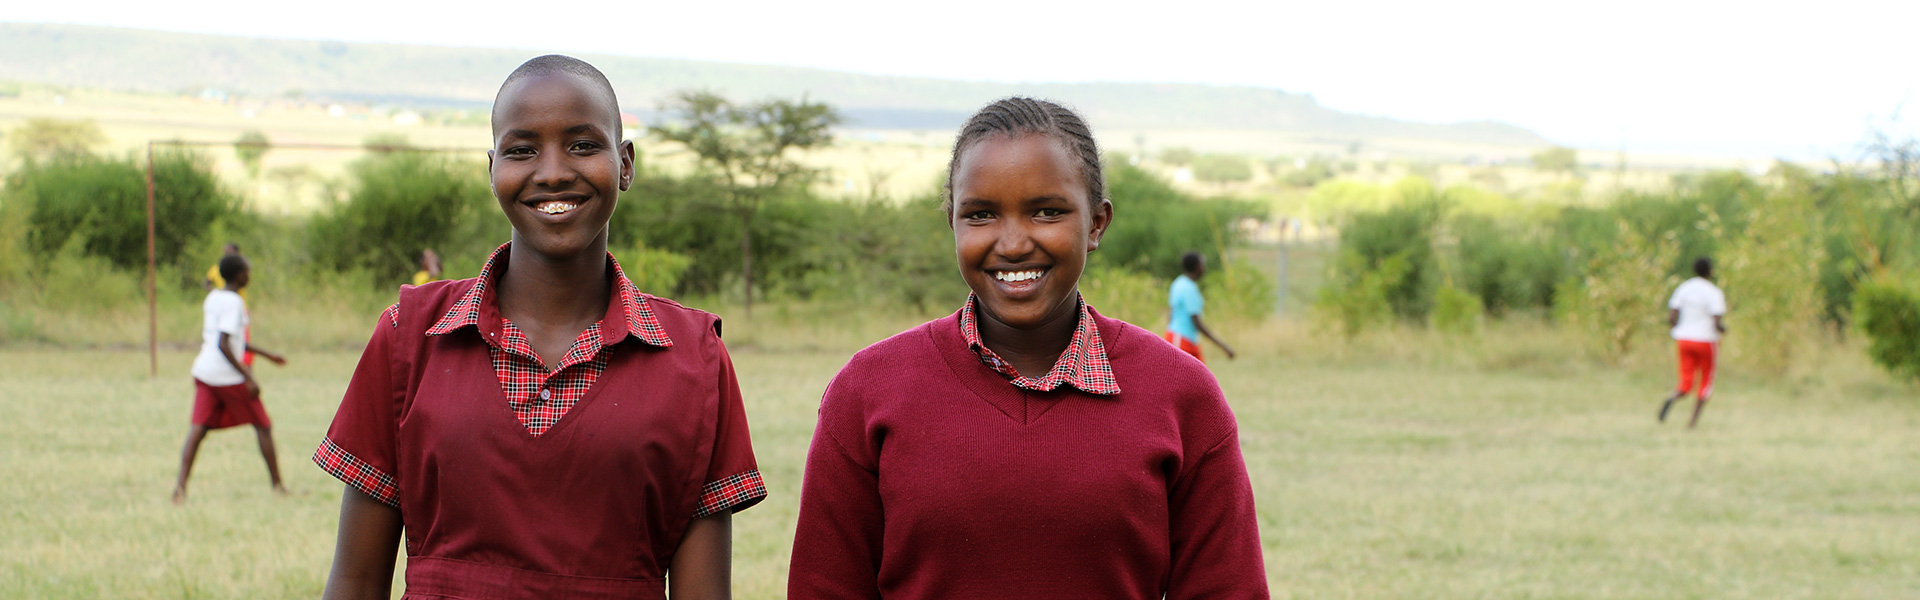 kenya-masai-mara-girls-leadership-school-talek2